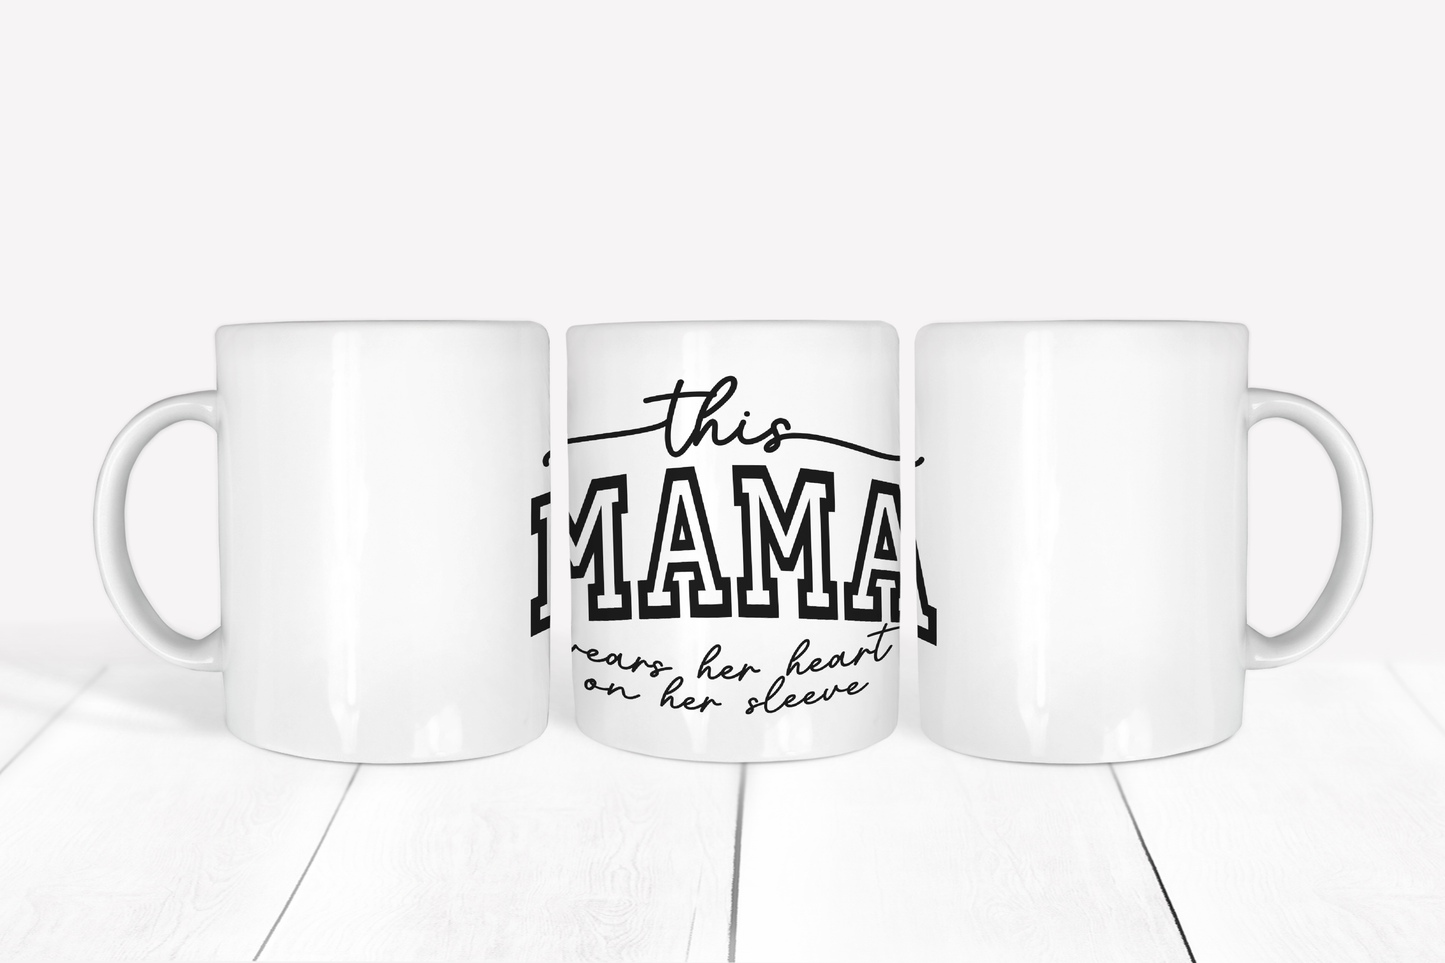 This Mama mug